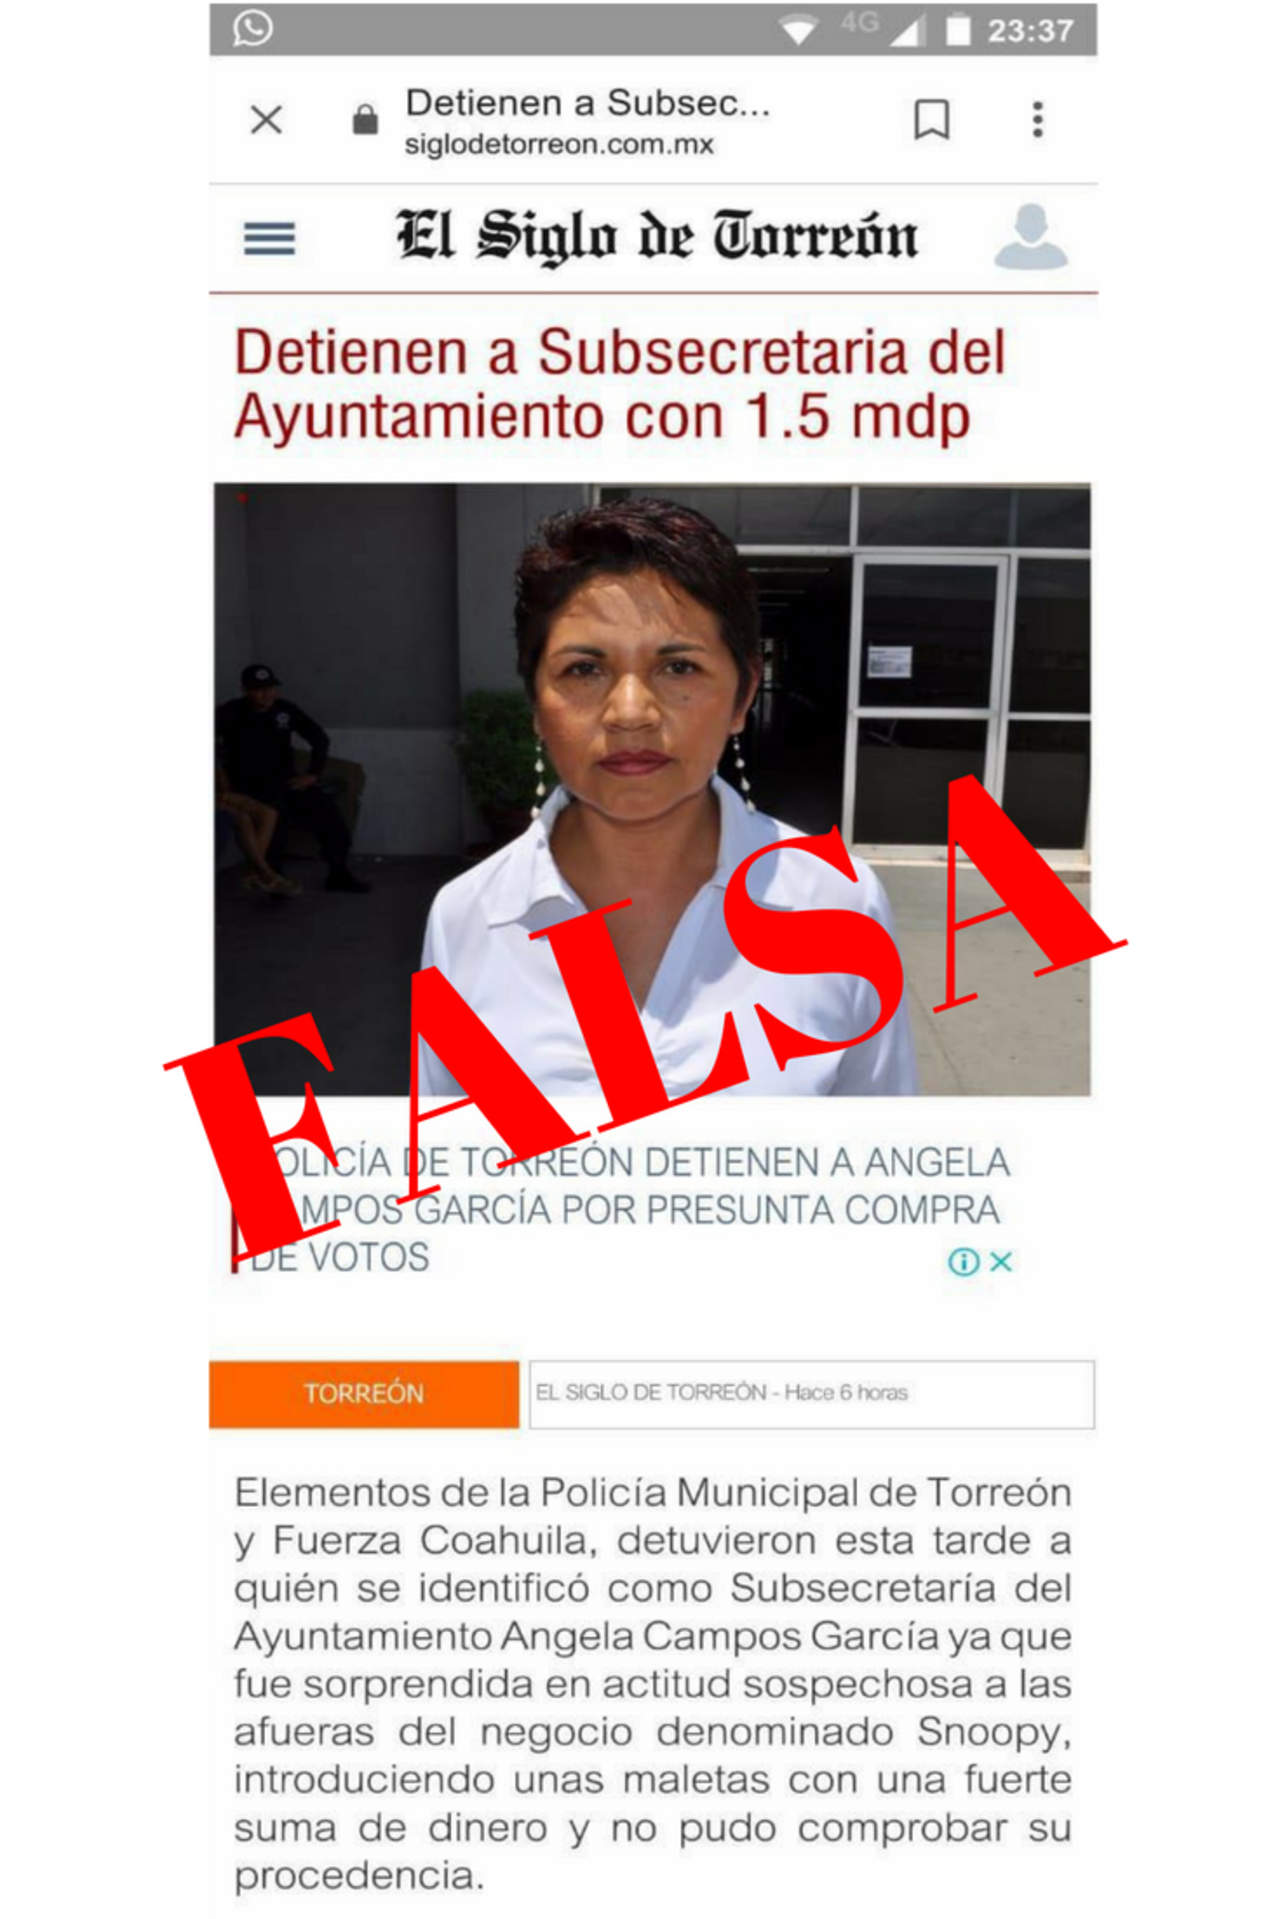 En redes sociales usan diseño de sitio web de El Siglo de Torreón para difundir noticias falsas. 